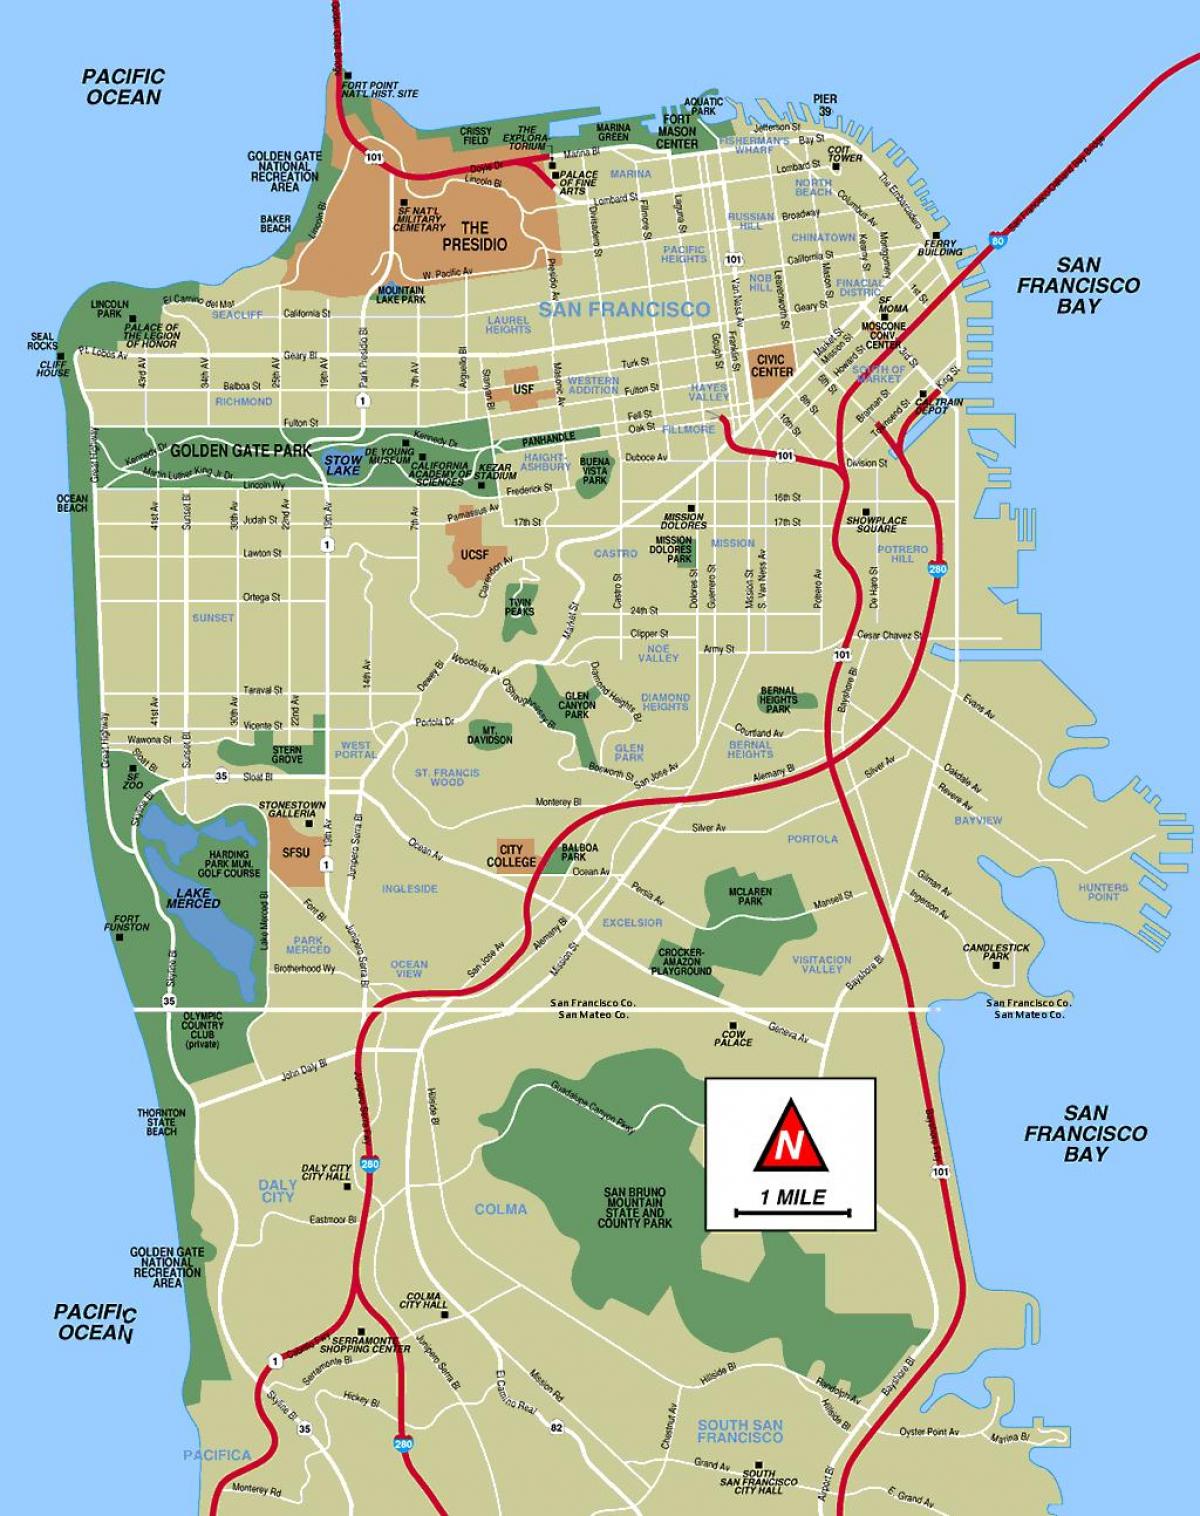 San Francisco na lugar upang bisitahin ang mapa